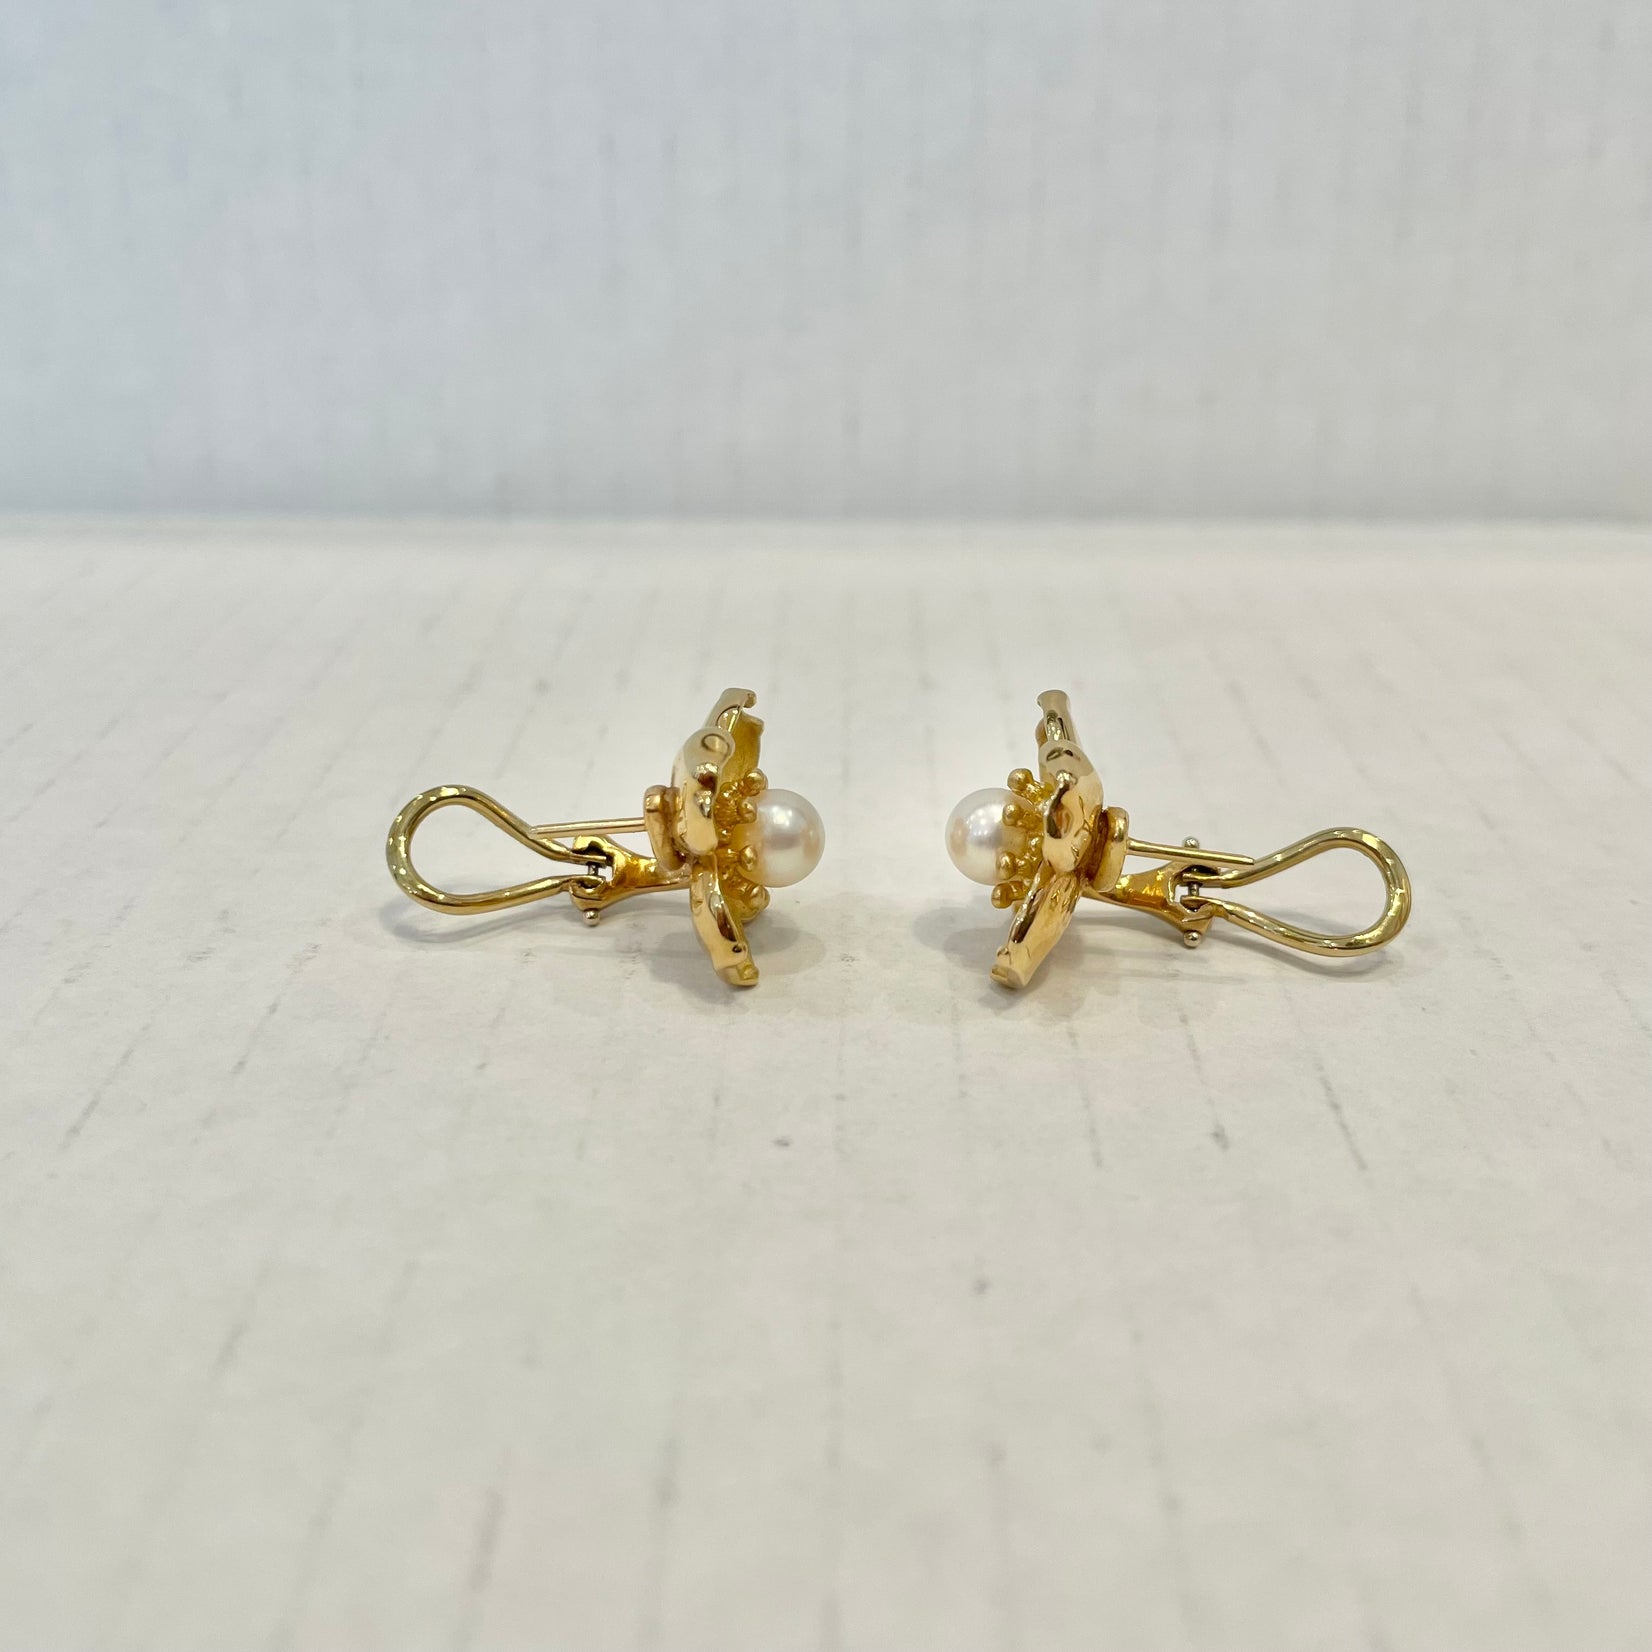 Tiffany & Co. Dogwood & Pearl Earrings in 18 Karat Yellow Gold